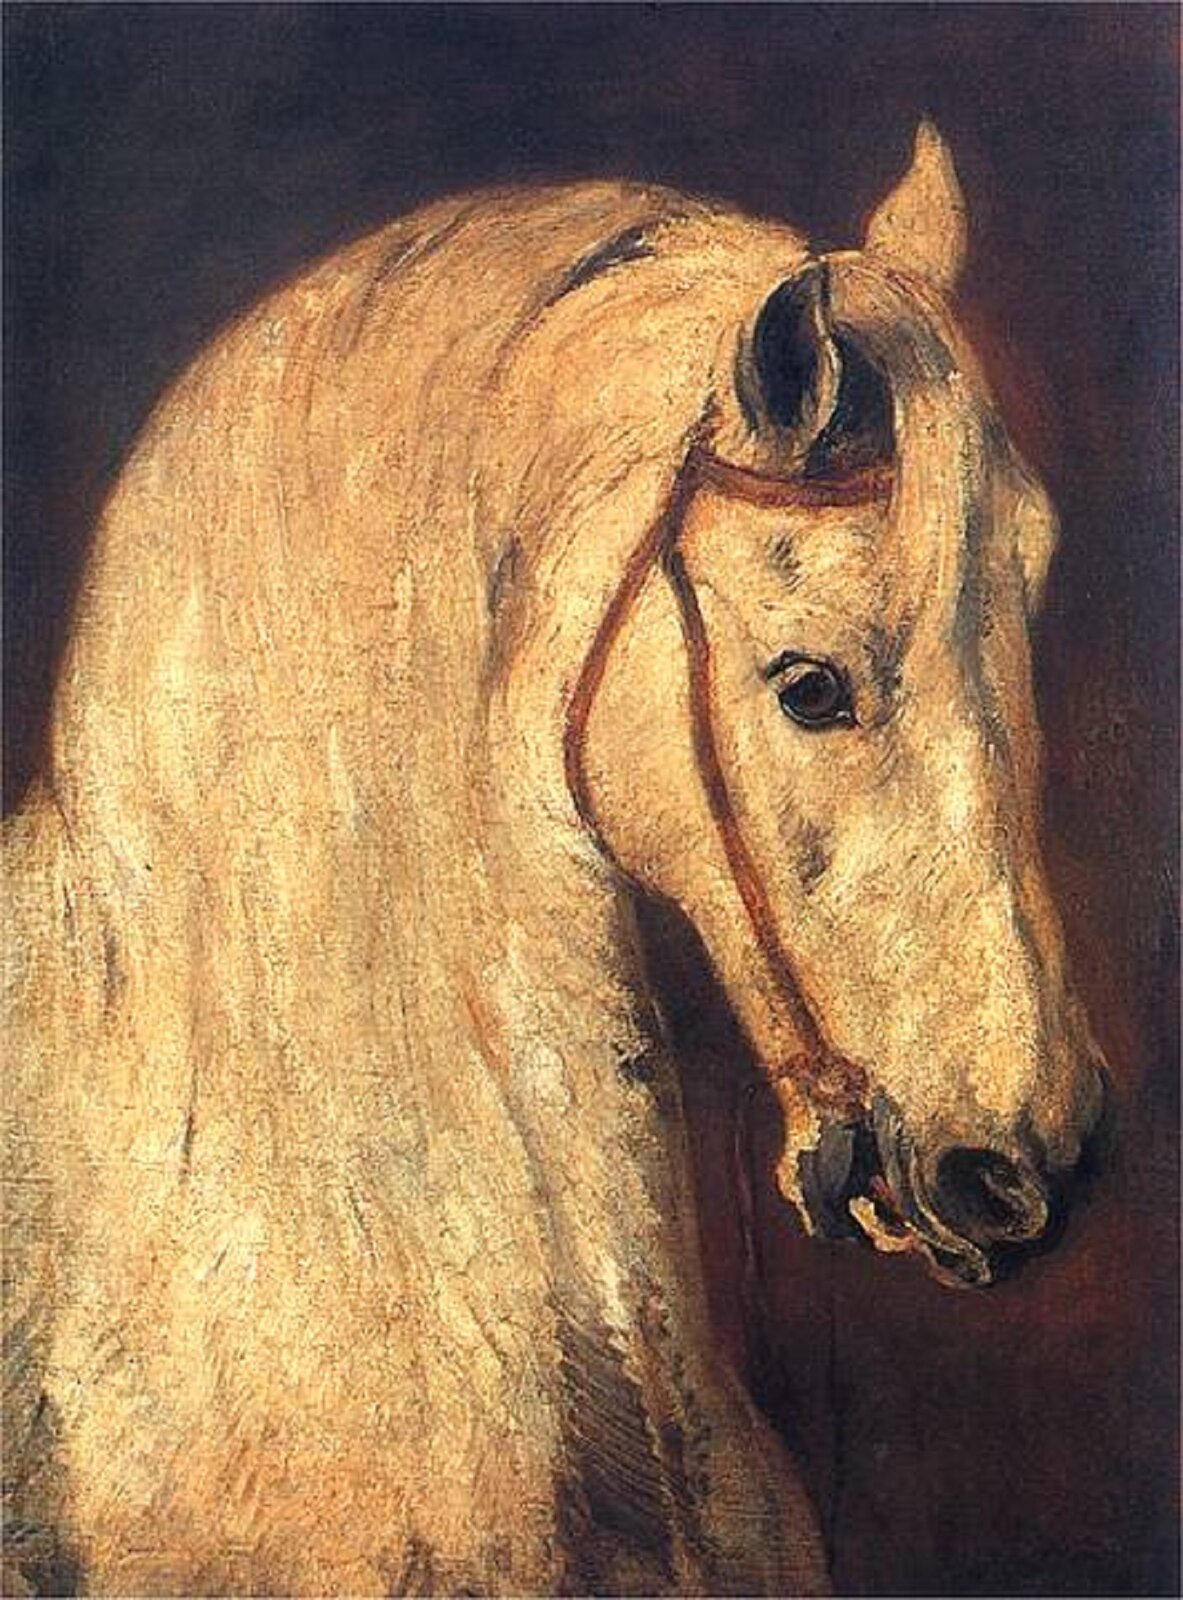 Ilustracja przedstawia dzieło Piotra Michałowskiego „Studium głowy końskiej”. Obraz przedstawia głowę konia z jasną grzywą. Koń jest jasnej maści, ma otwarty pysk. Widać nałożoną na głowę rzemienną uzdę. Tło jest ciemno-brązowe w górnej części przechodzące w czerń.